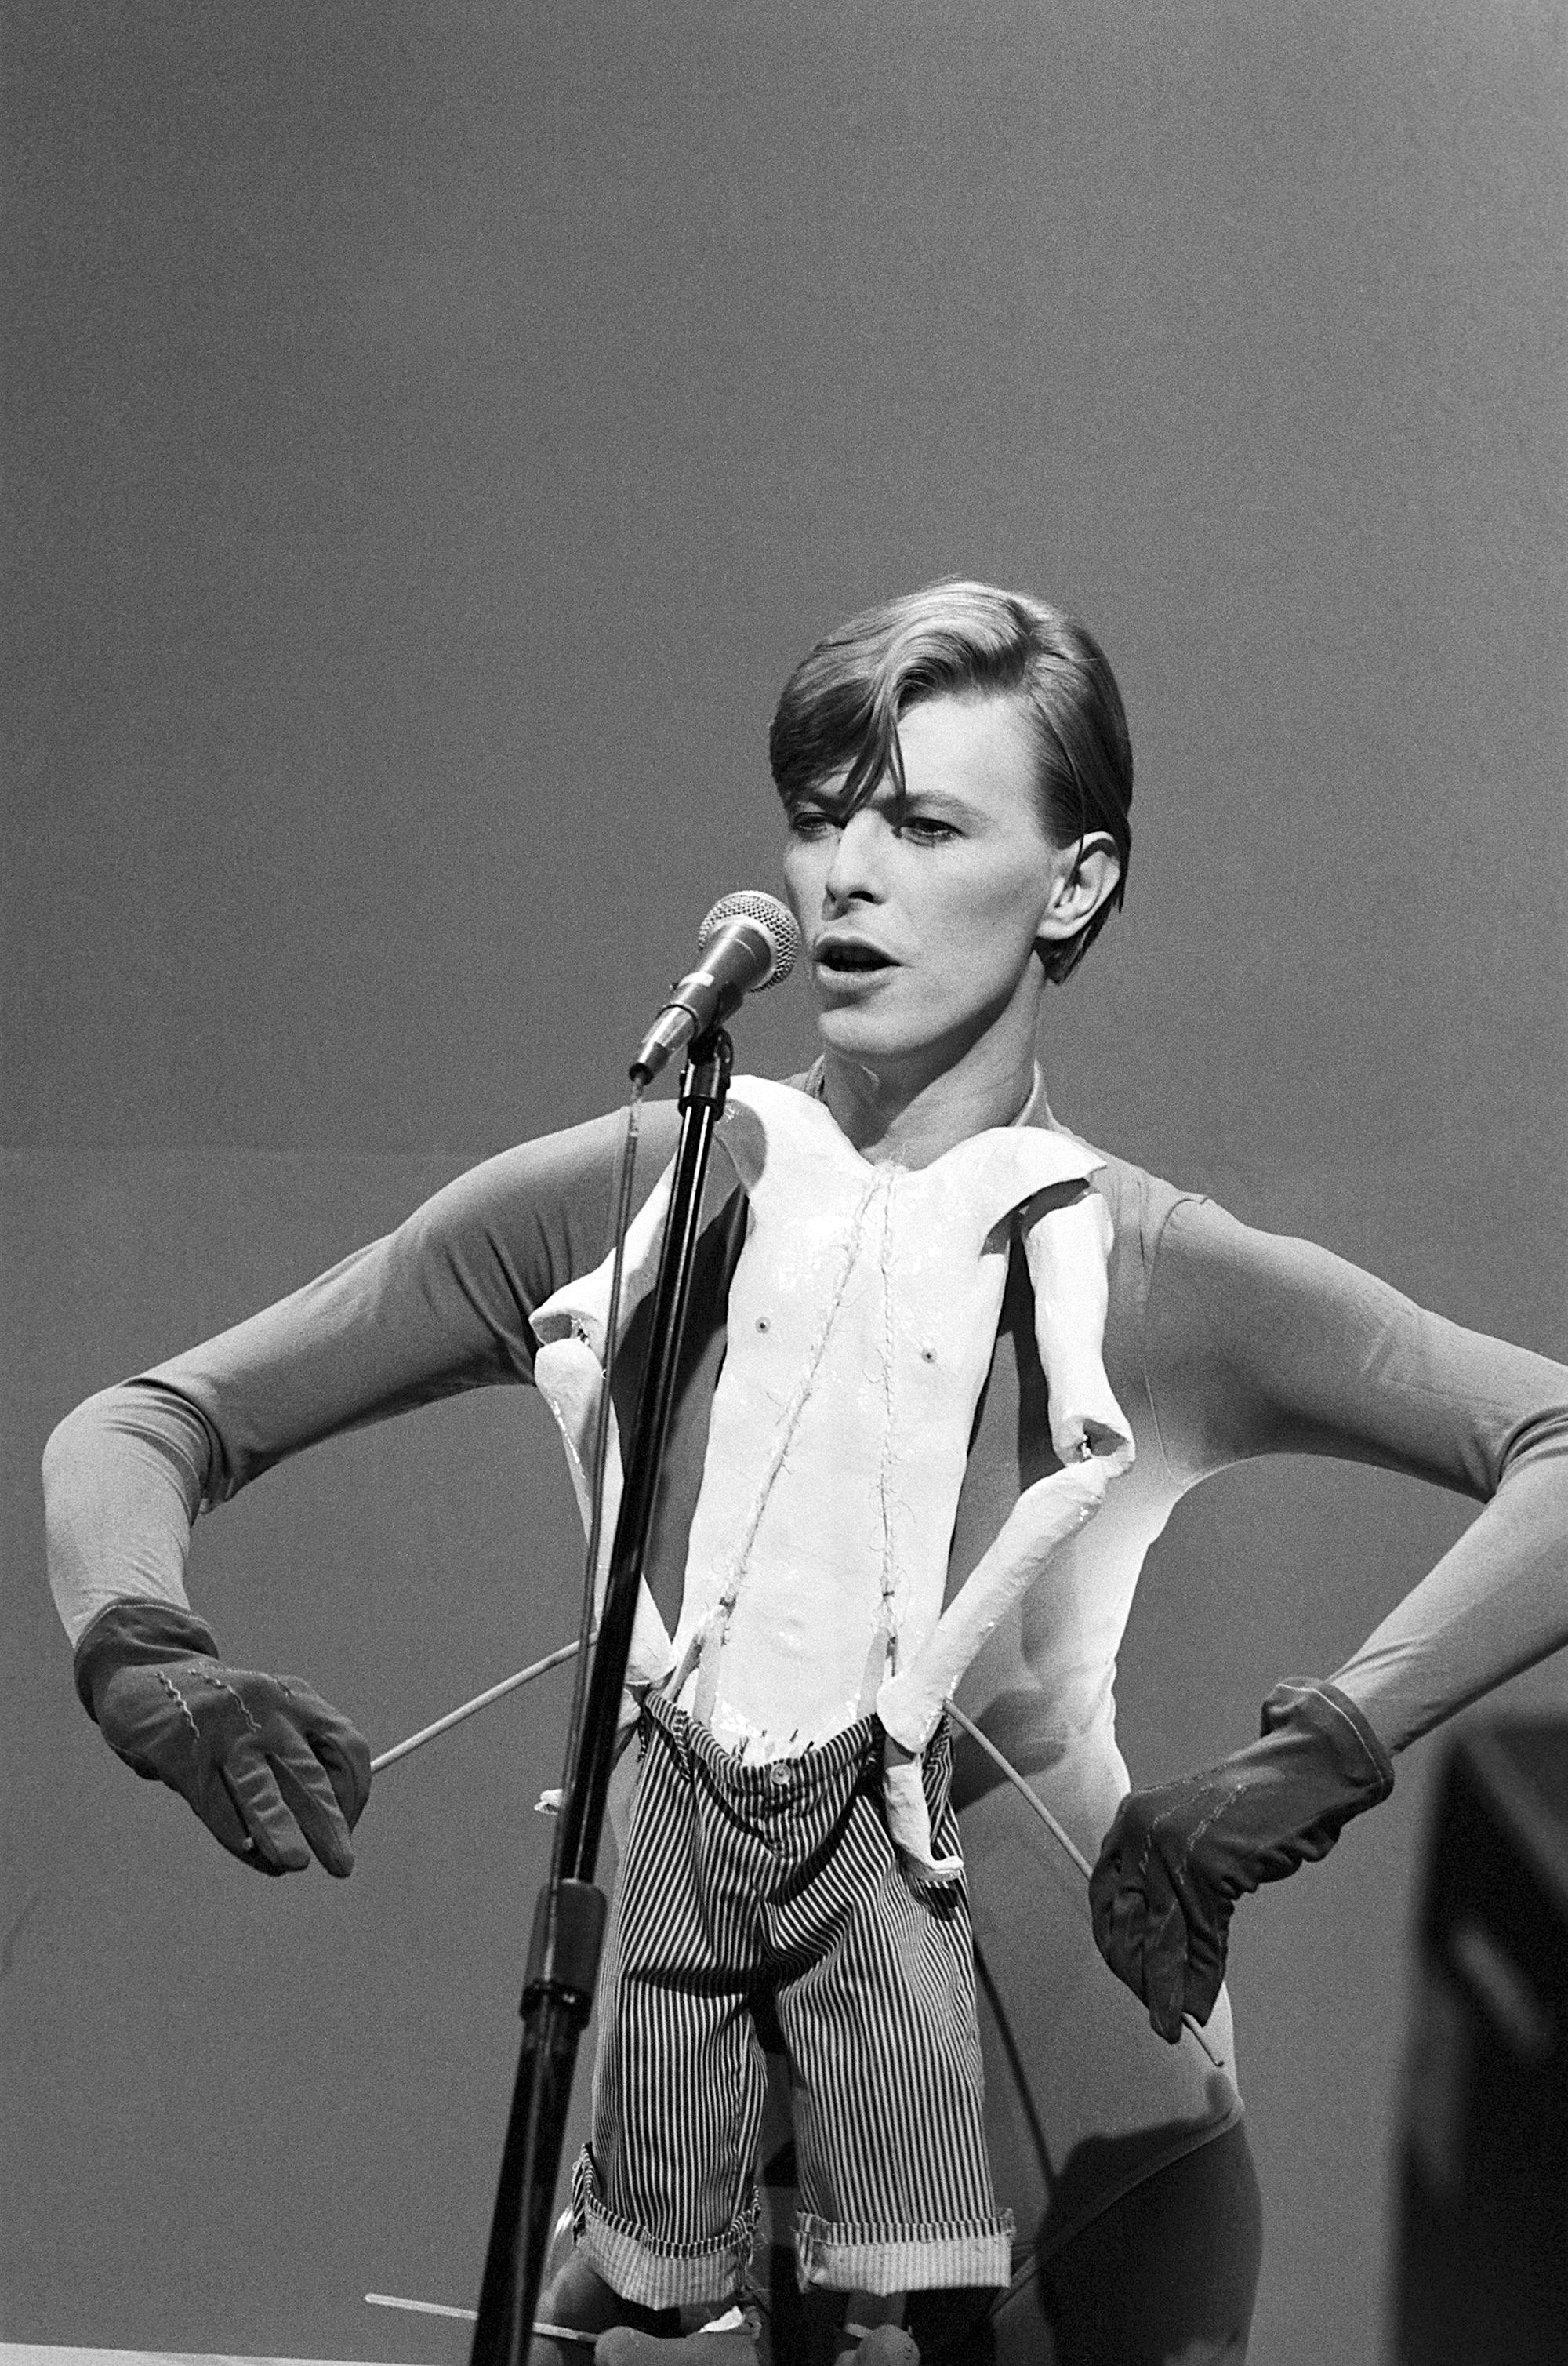 David Bowie, „Boys Keep Swinging“. Koppelung von Mensch und Puppe